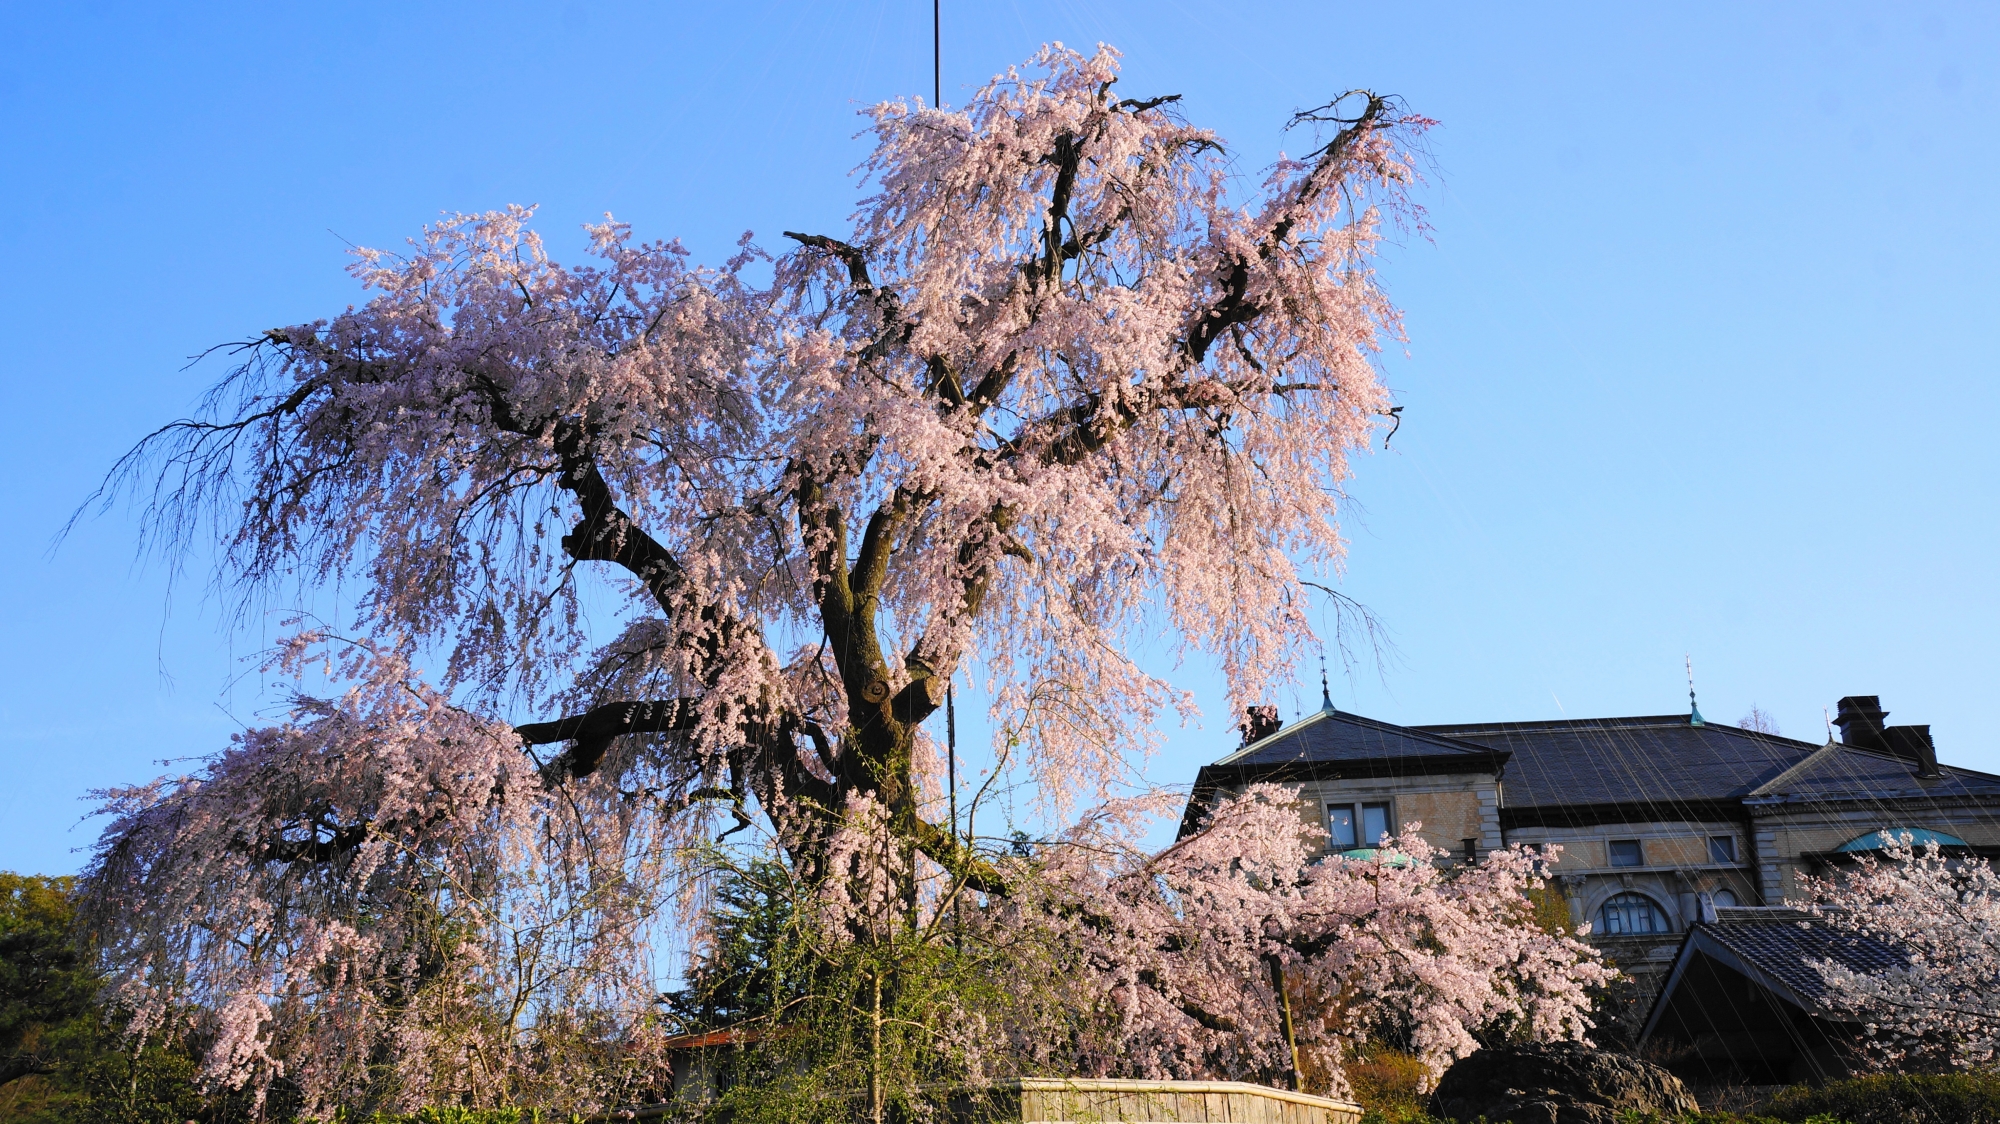 背景のレトロな建物にも映える大きく枝を伸ばした桜